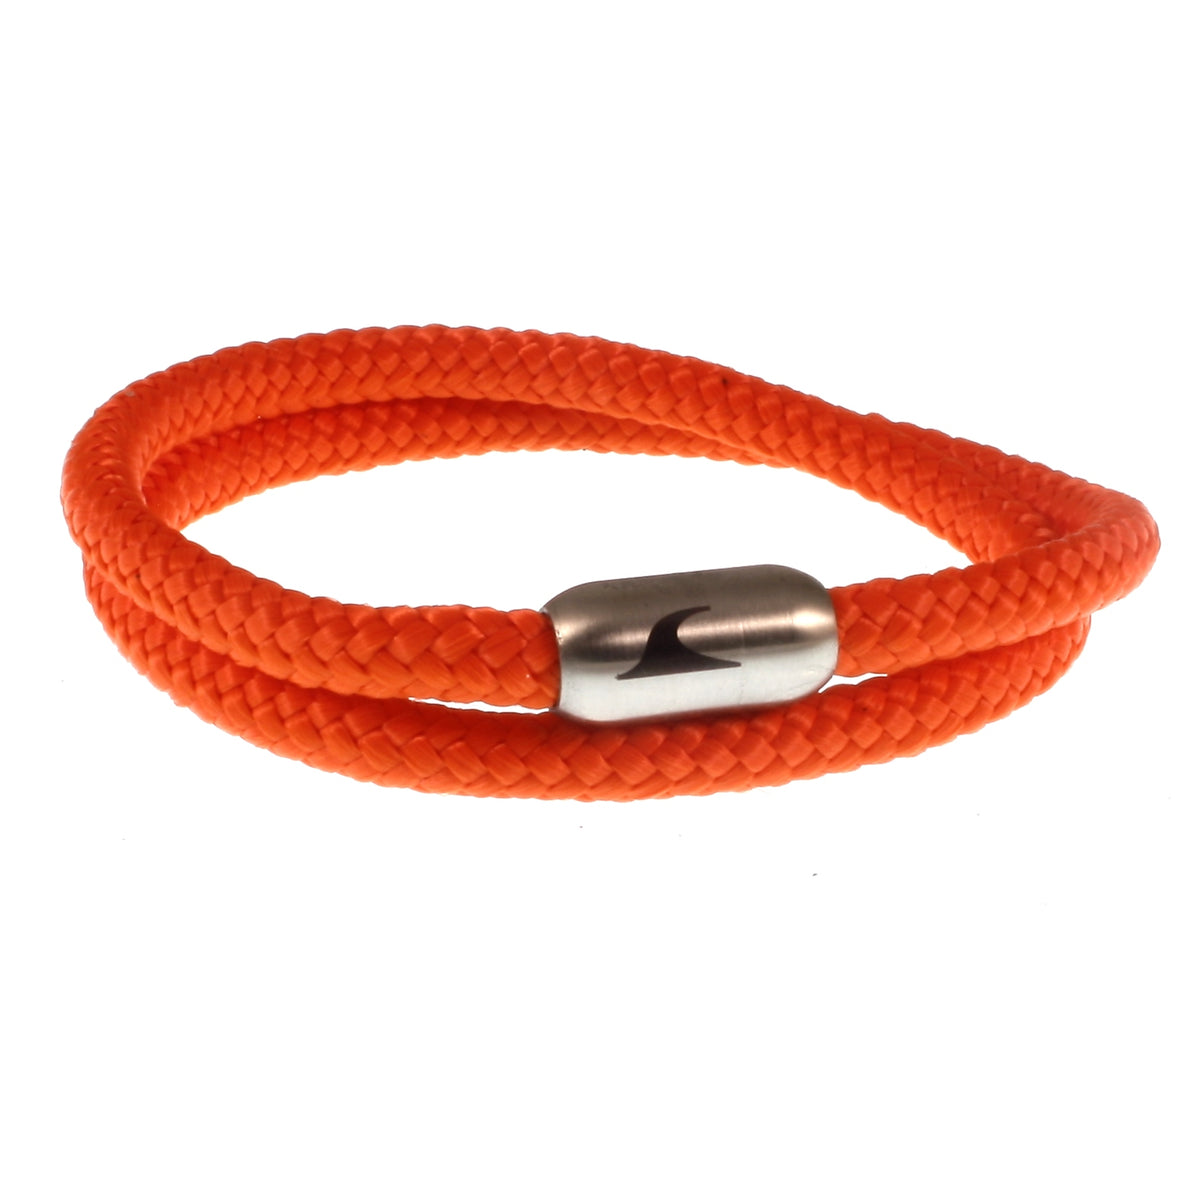 Herren-Segeltau-Armband-damen-hawaii-orange-silber-Edelstahlverschluss-vorn-wavepirate-shop-st